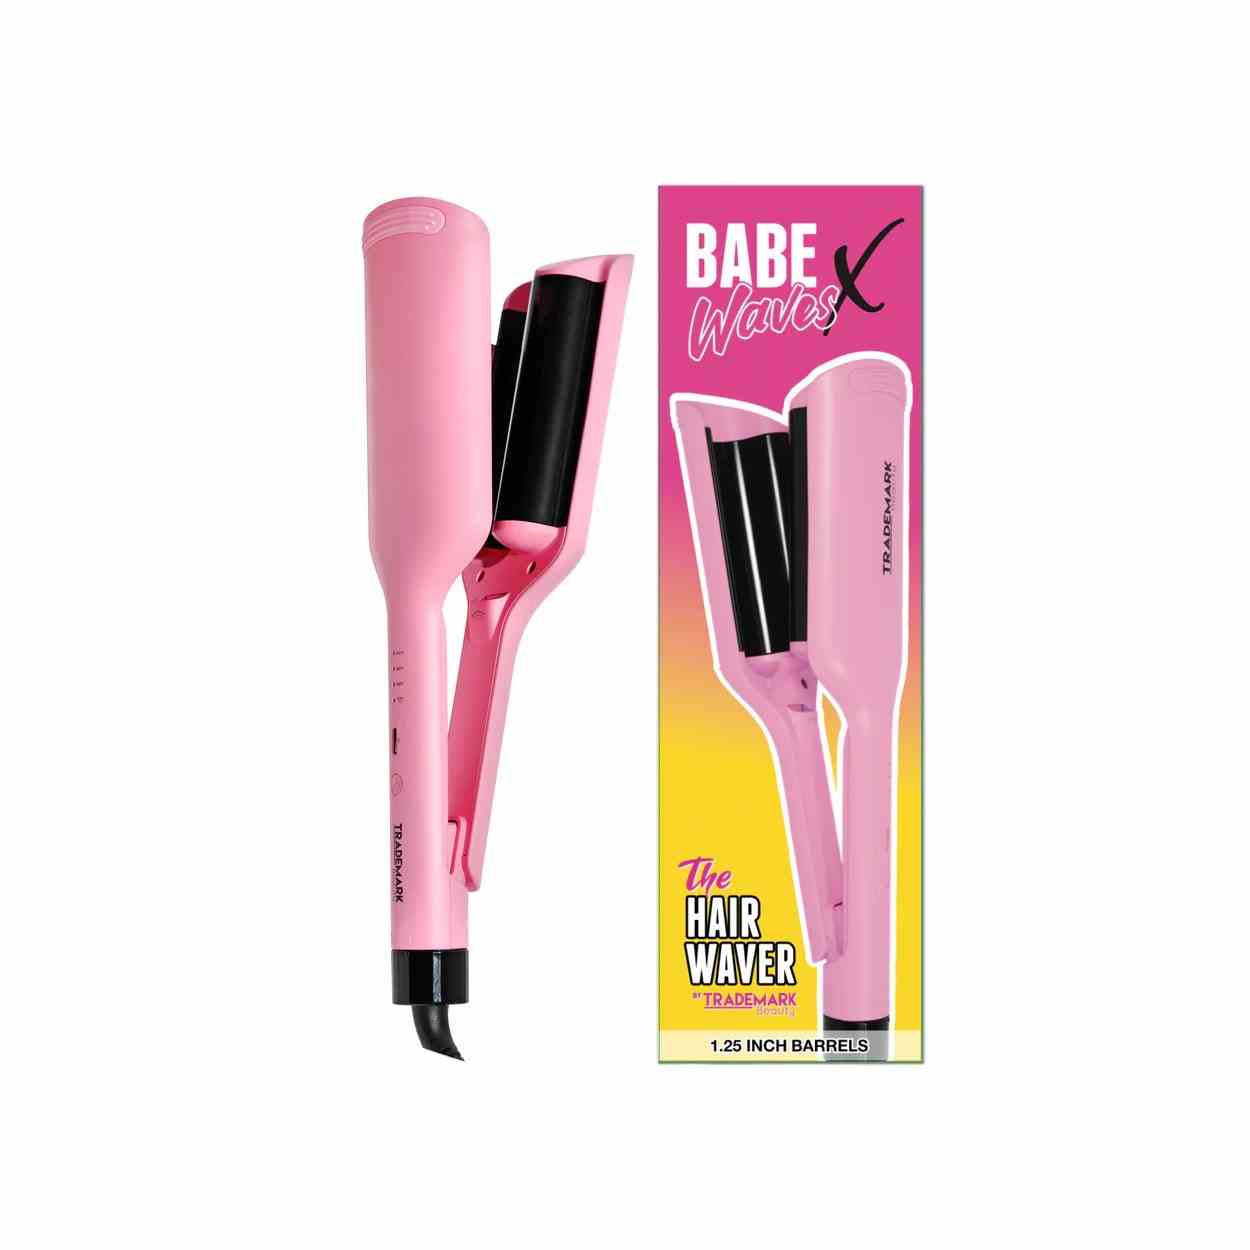 Warenzeichen Beauty Babe Waves X rosa Strand Waver und Box auf weißem Hintergrund